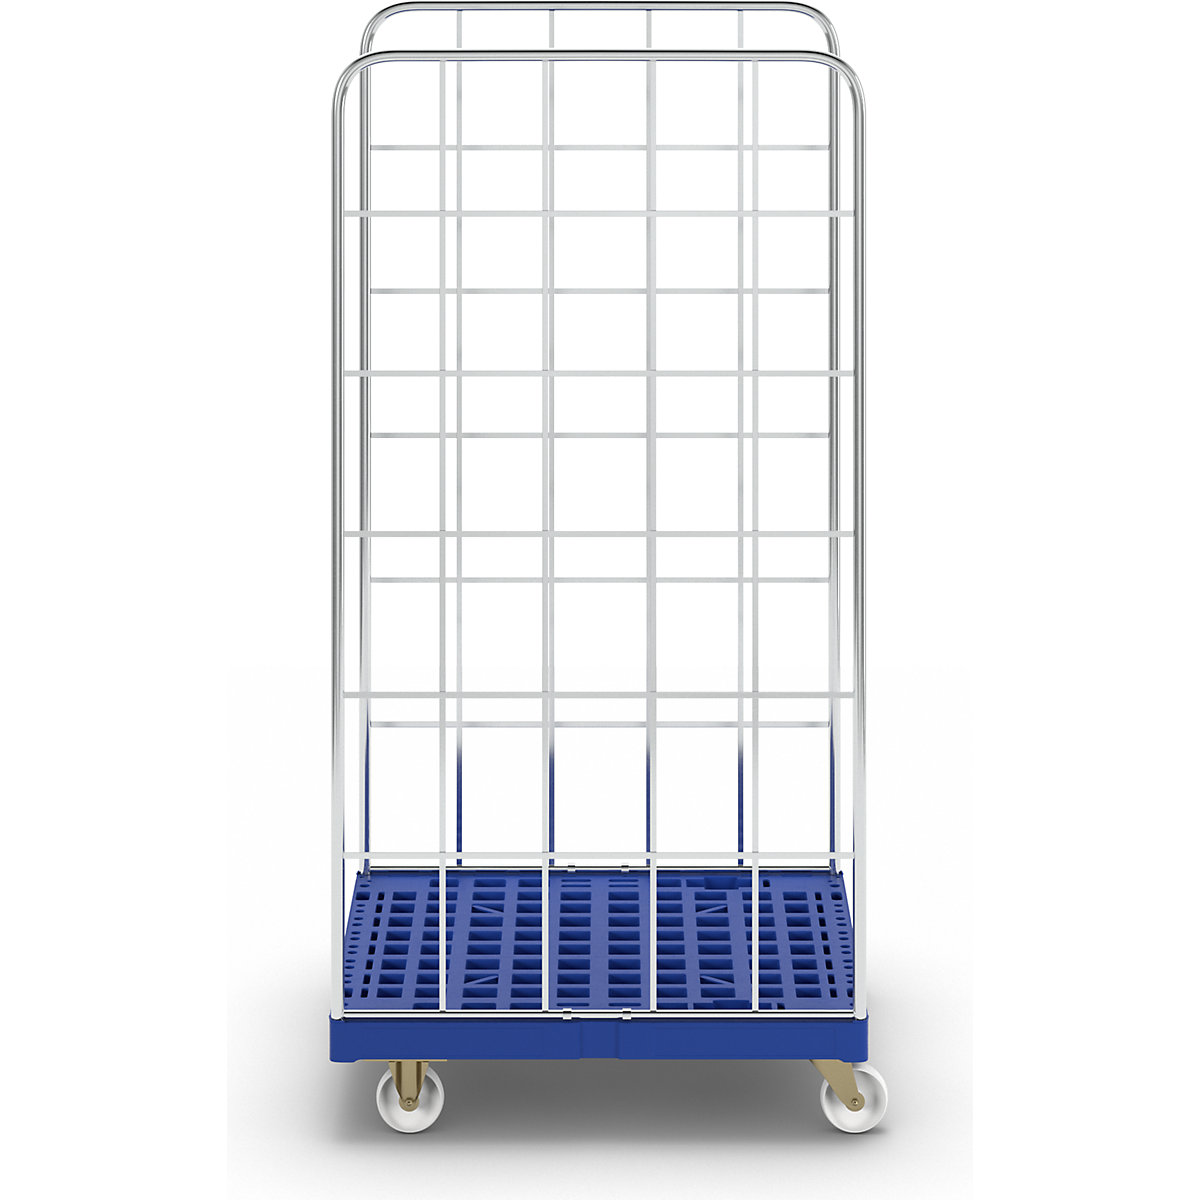 Contentor rolante com plataforma rolante em plástico (Imagem do produto 3)-2